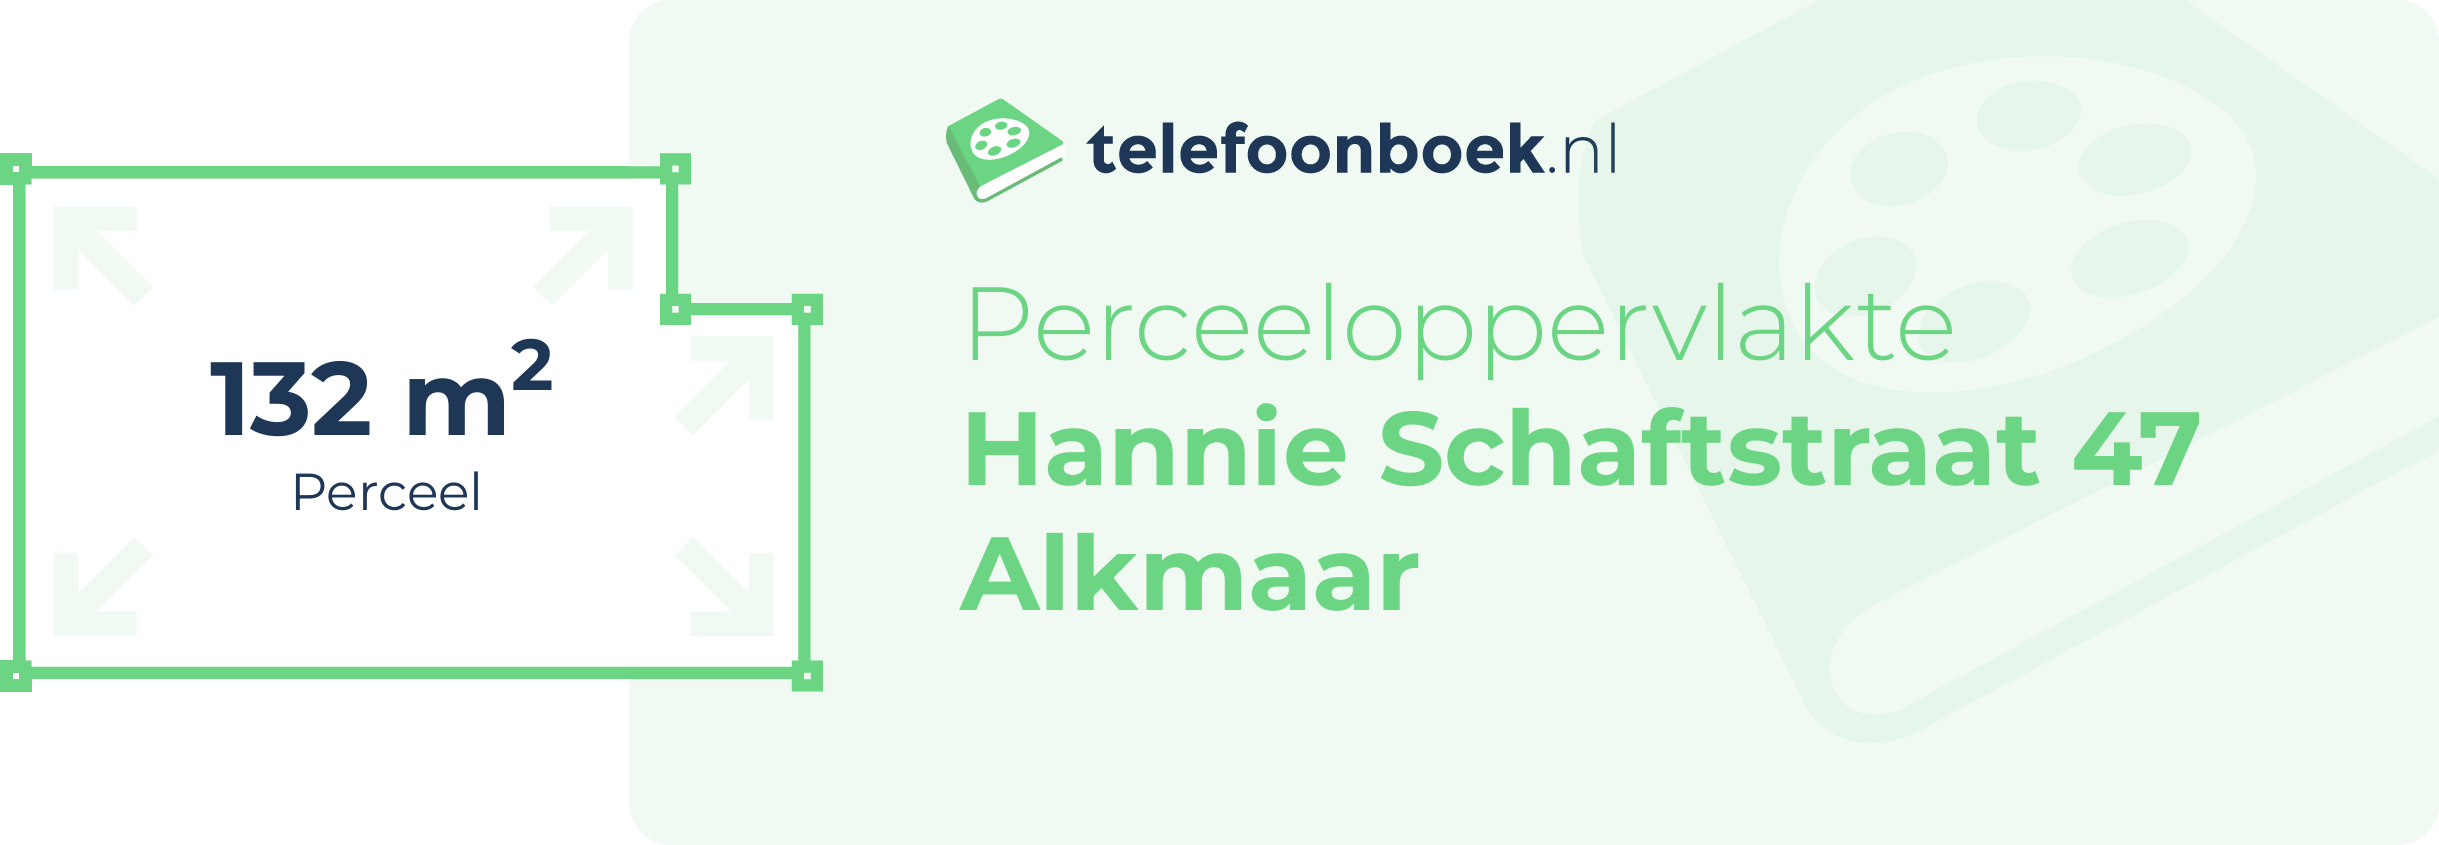 Perceeloppervlakte Hannie Schaftstraat 47 Alkmaar